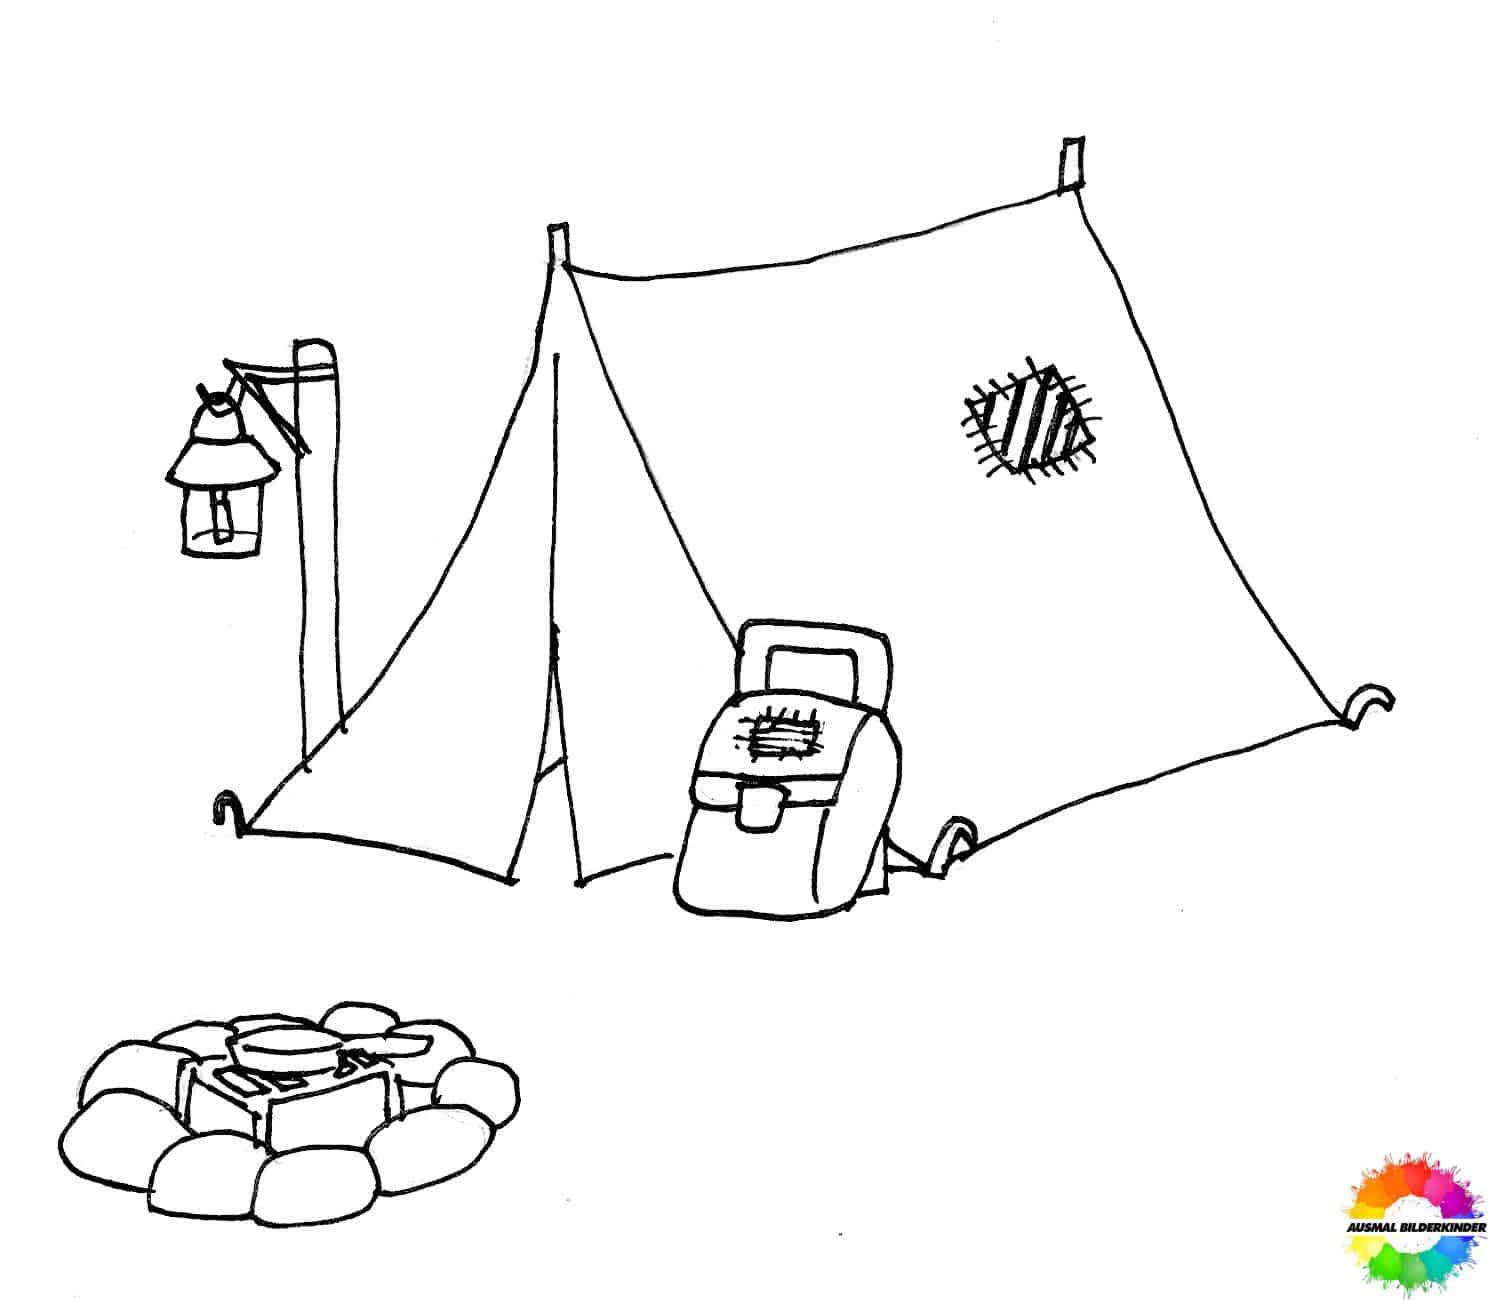 Camping-Ausmalbilder-ausmalbilderkinder-de-43